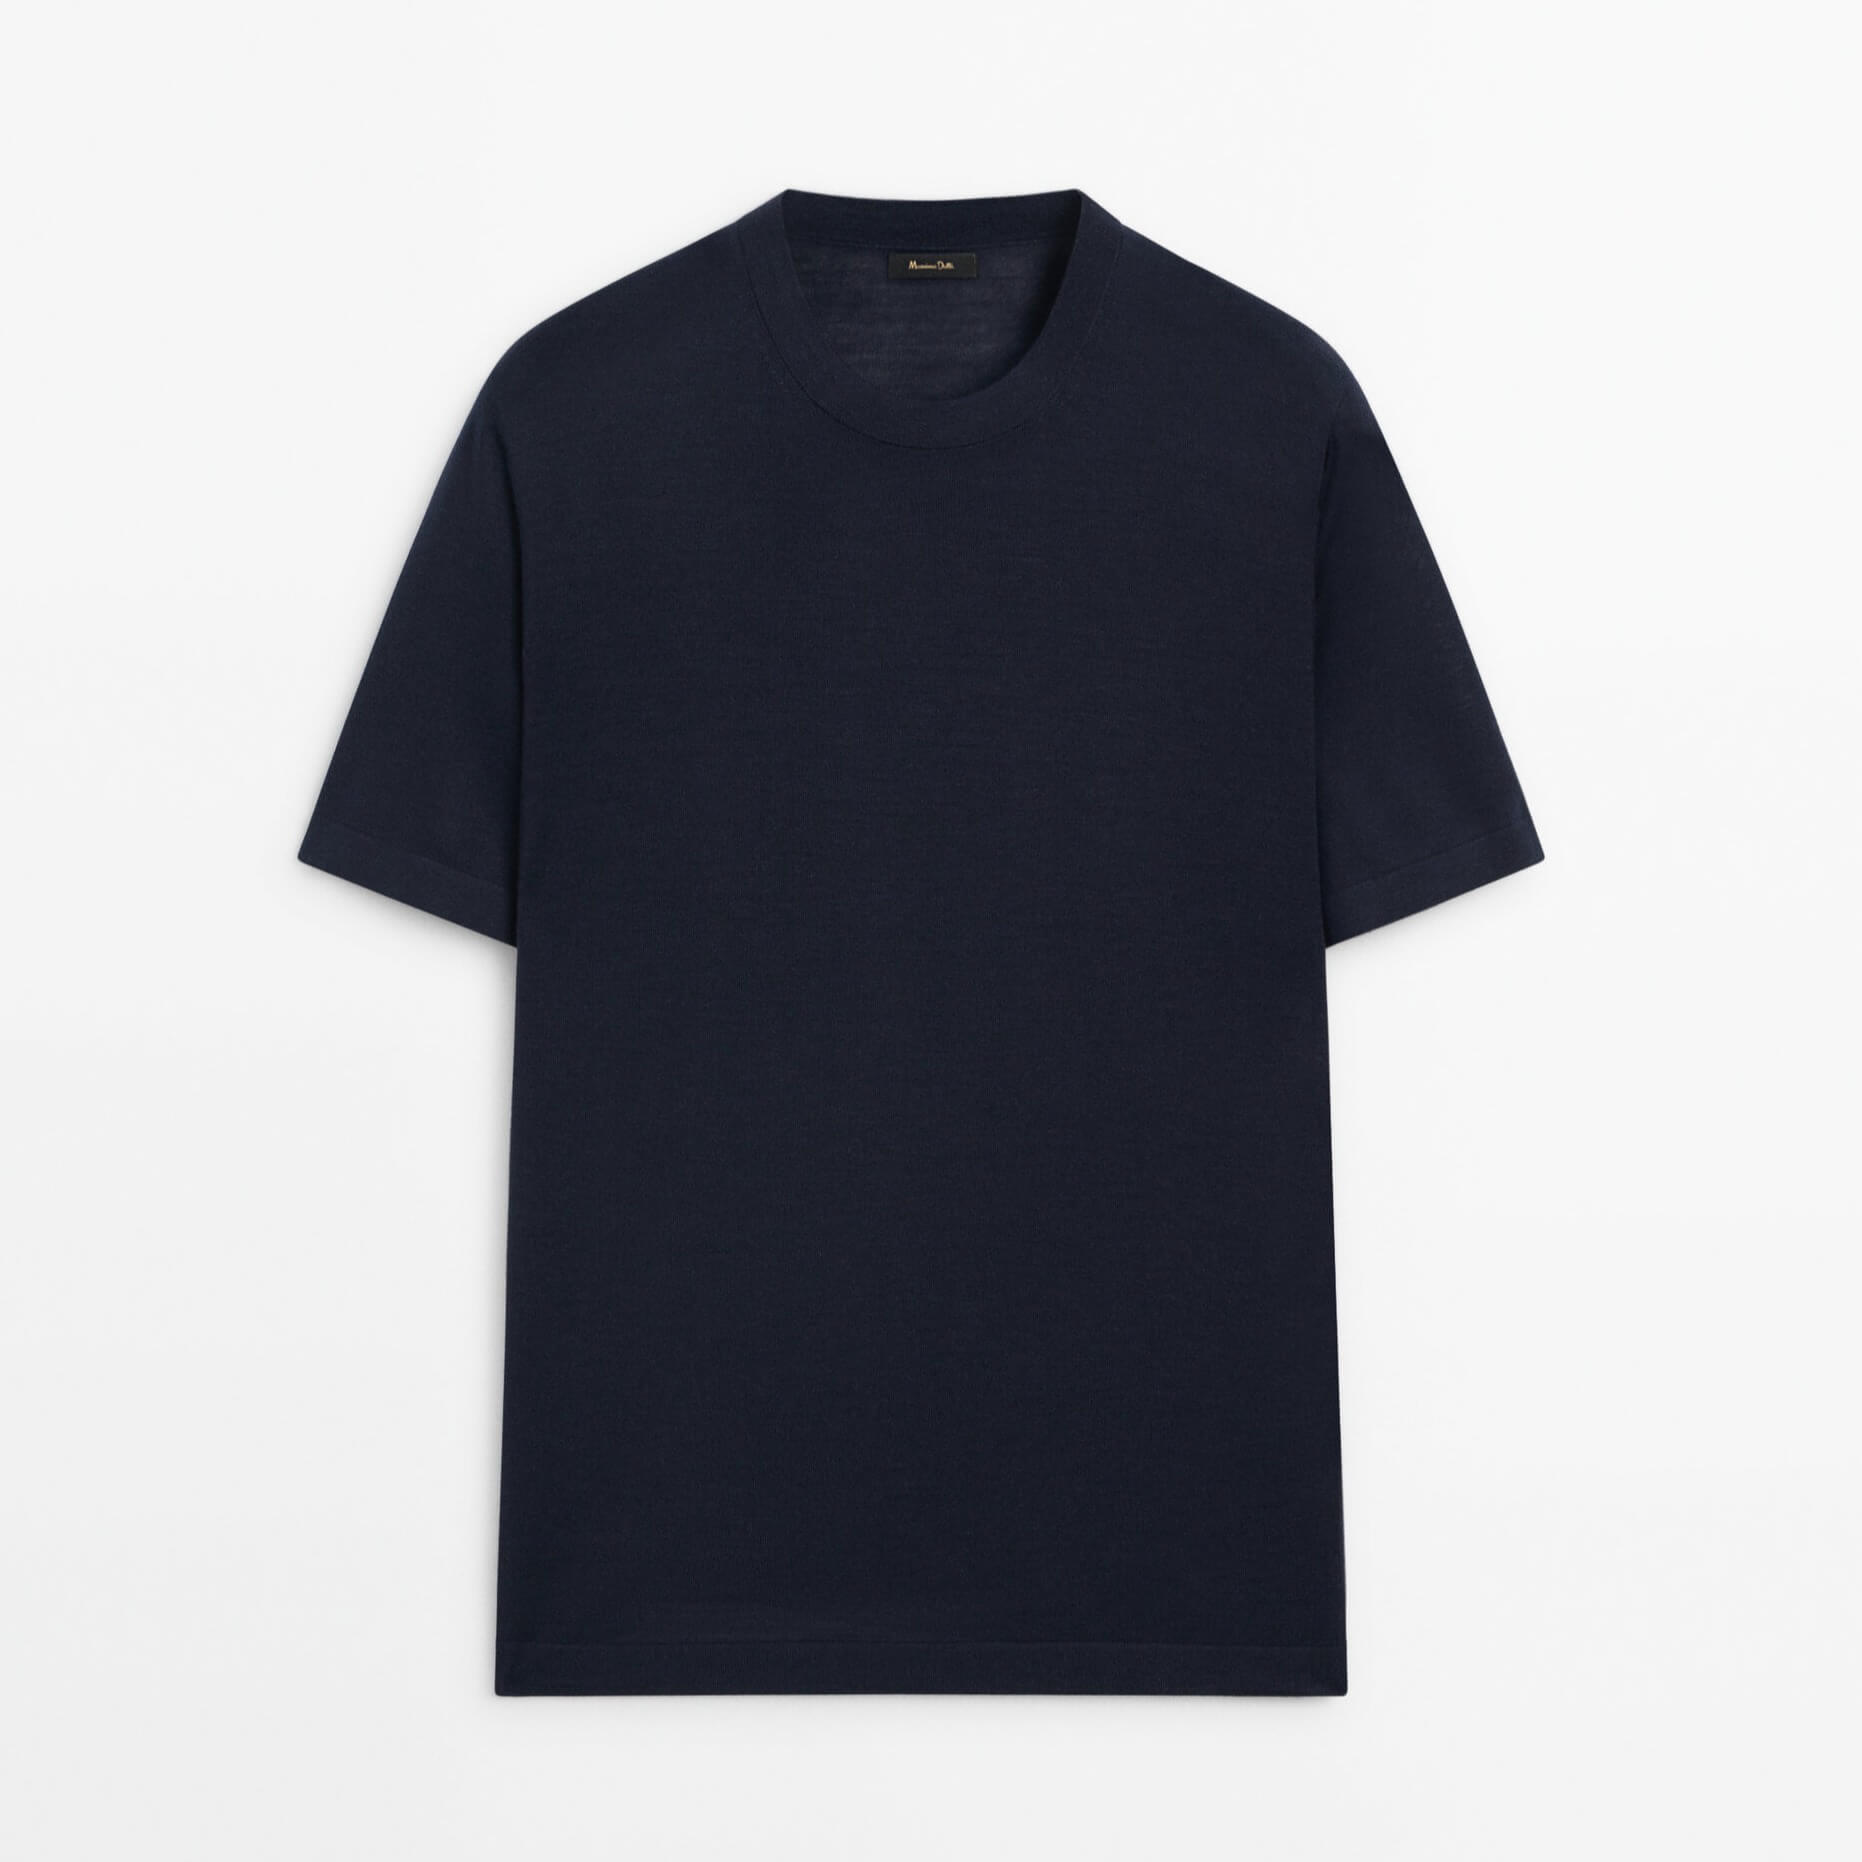 Футболка Massimo Dutti Short Sleeve Wool Blend, темно-синий футболка с коротким рукавом новинка лета 2021 вязаная корейская свободная приталенная рубашка с круглым вырезом джокер пуловер куртка для